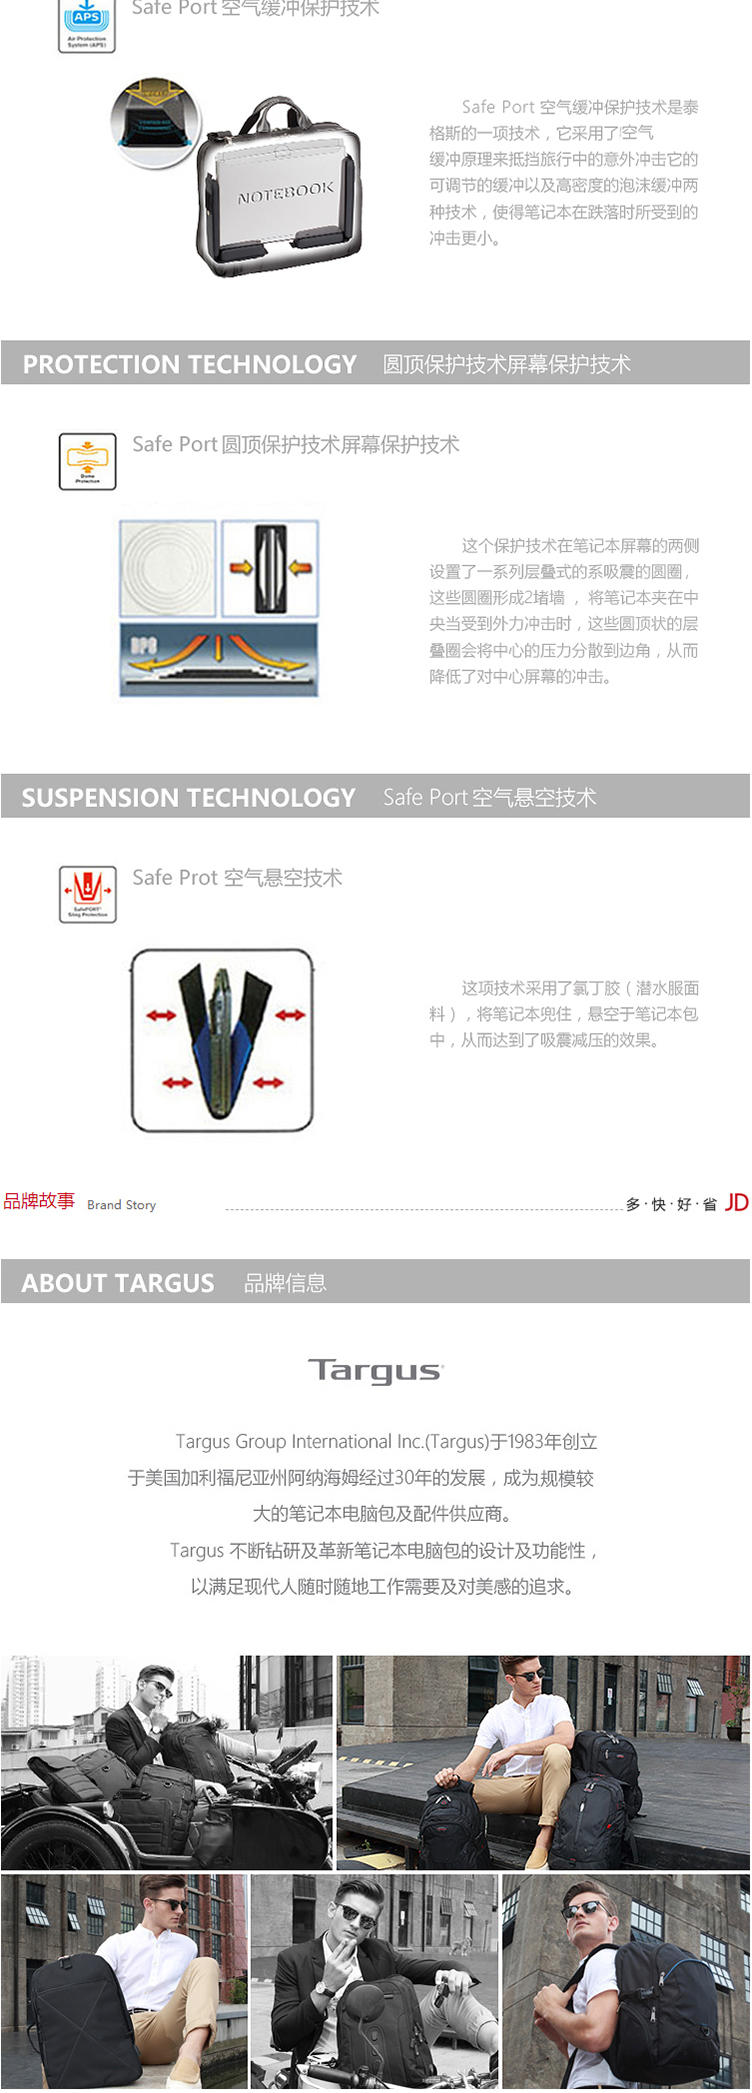 泰格斯/TARGUS双肩包电脑包男女15.6寸多功能涤纶防水大容量旅行休闲背包 黑 TSB226AP